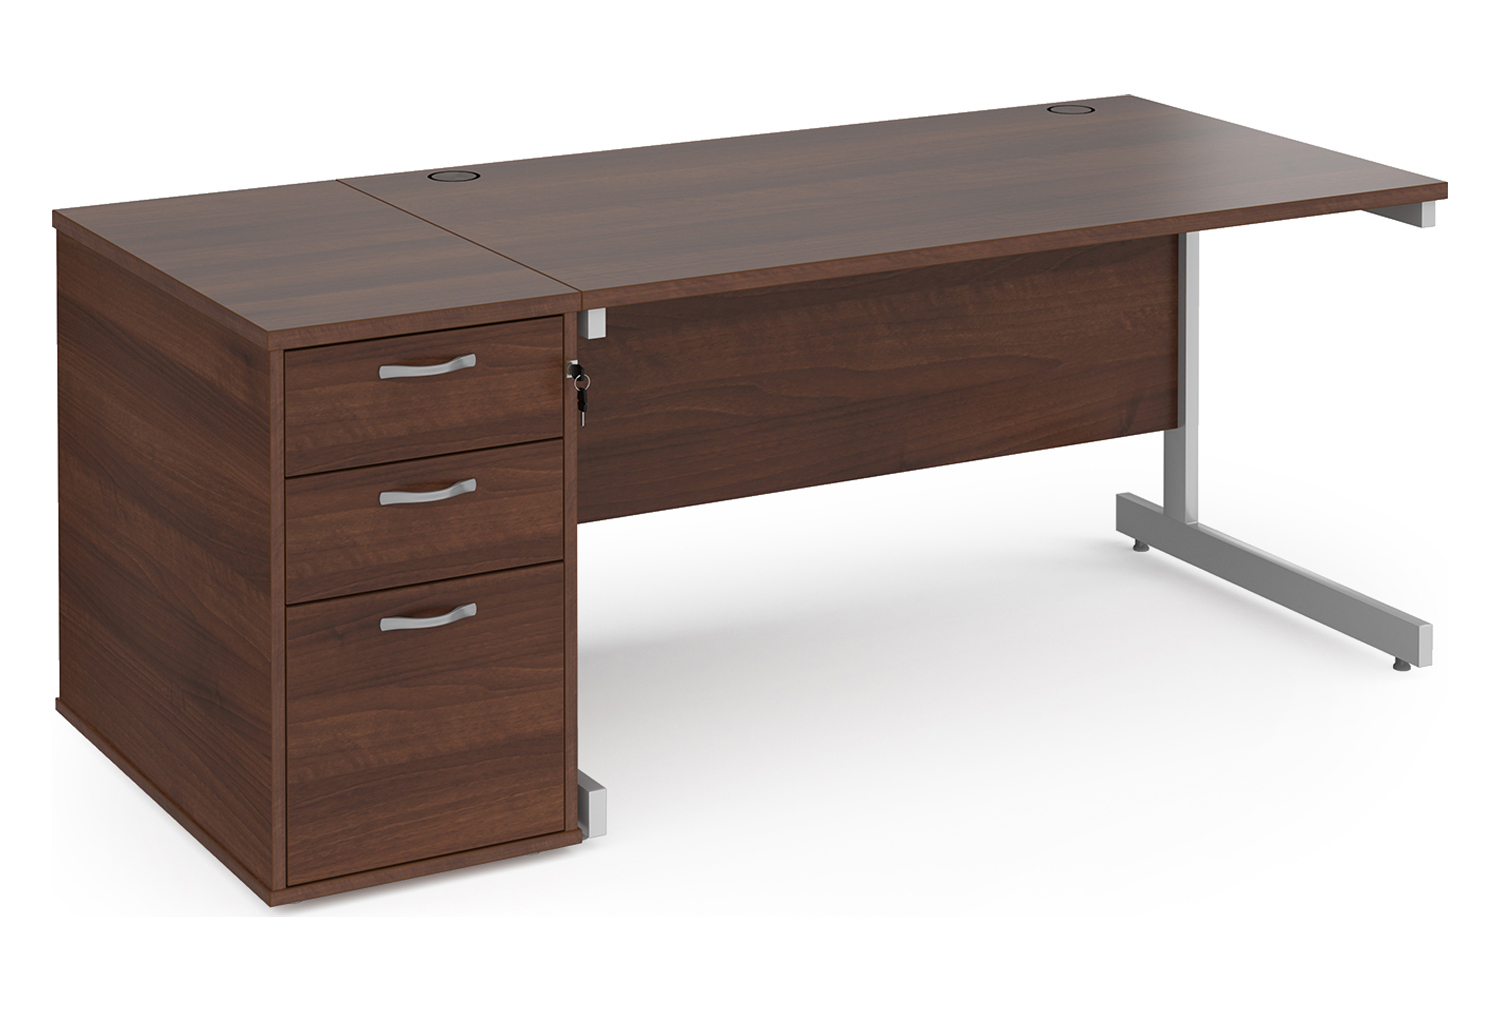 Tully I Office Desk Bundle Deal 5, 140wx80dx73h (cm), Walnut